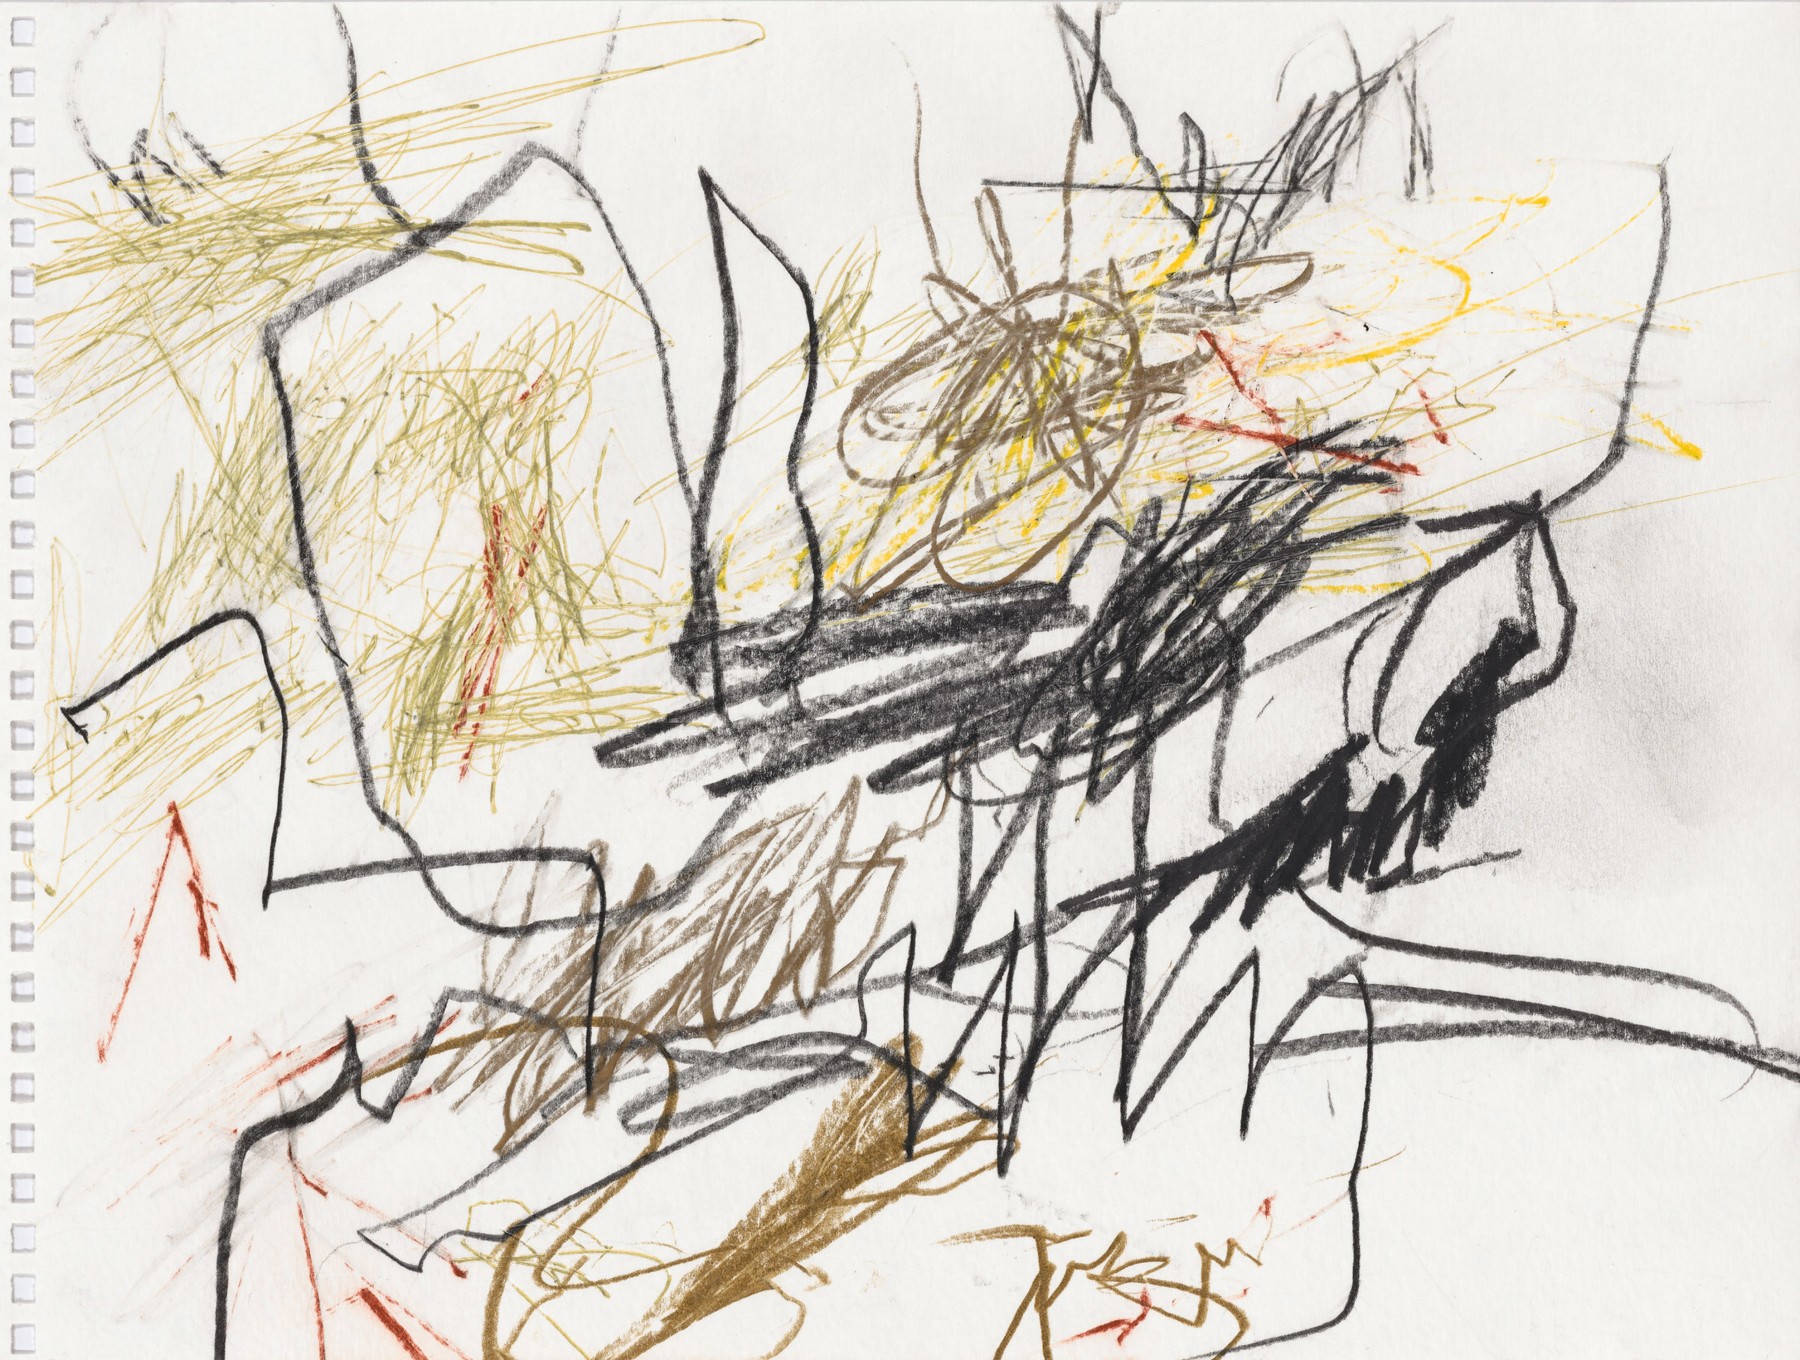 Don Van Vliet
&amp;quot;Untitled&amp;quot;, 1999
Colored pencil, pen on paper
9 x 12 inches
23 x 30.5 cm
VLZ 592